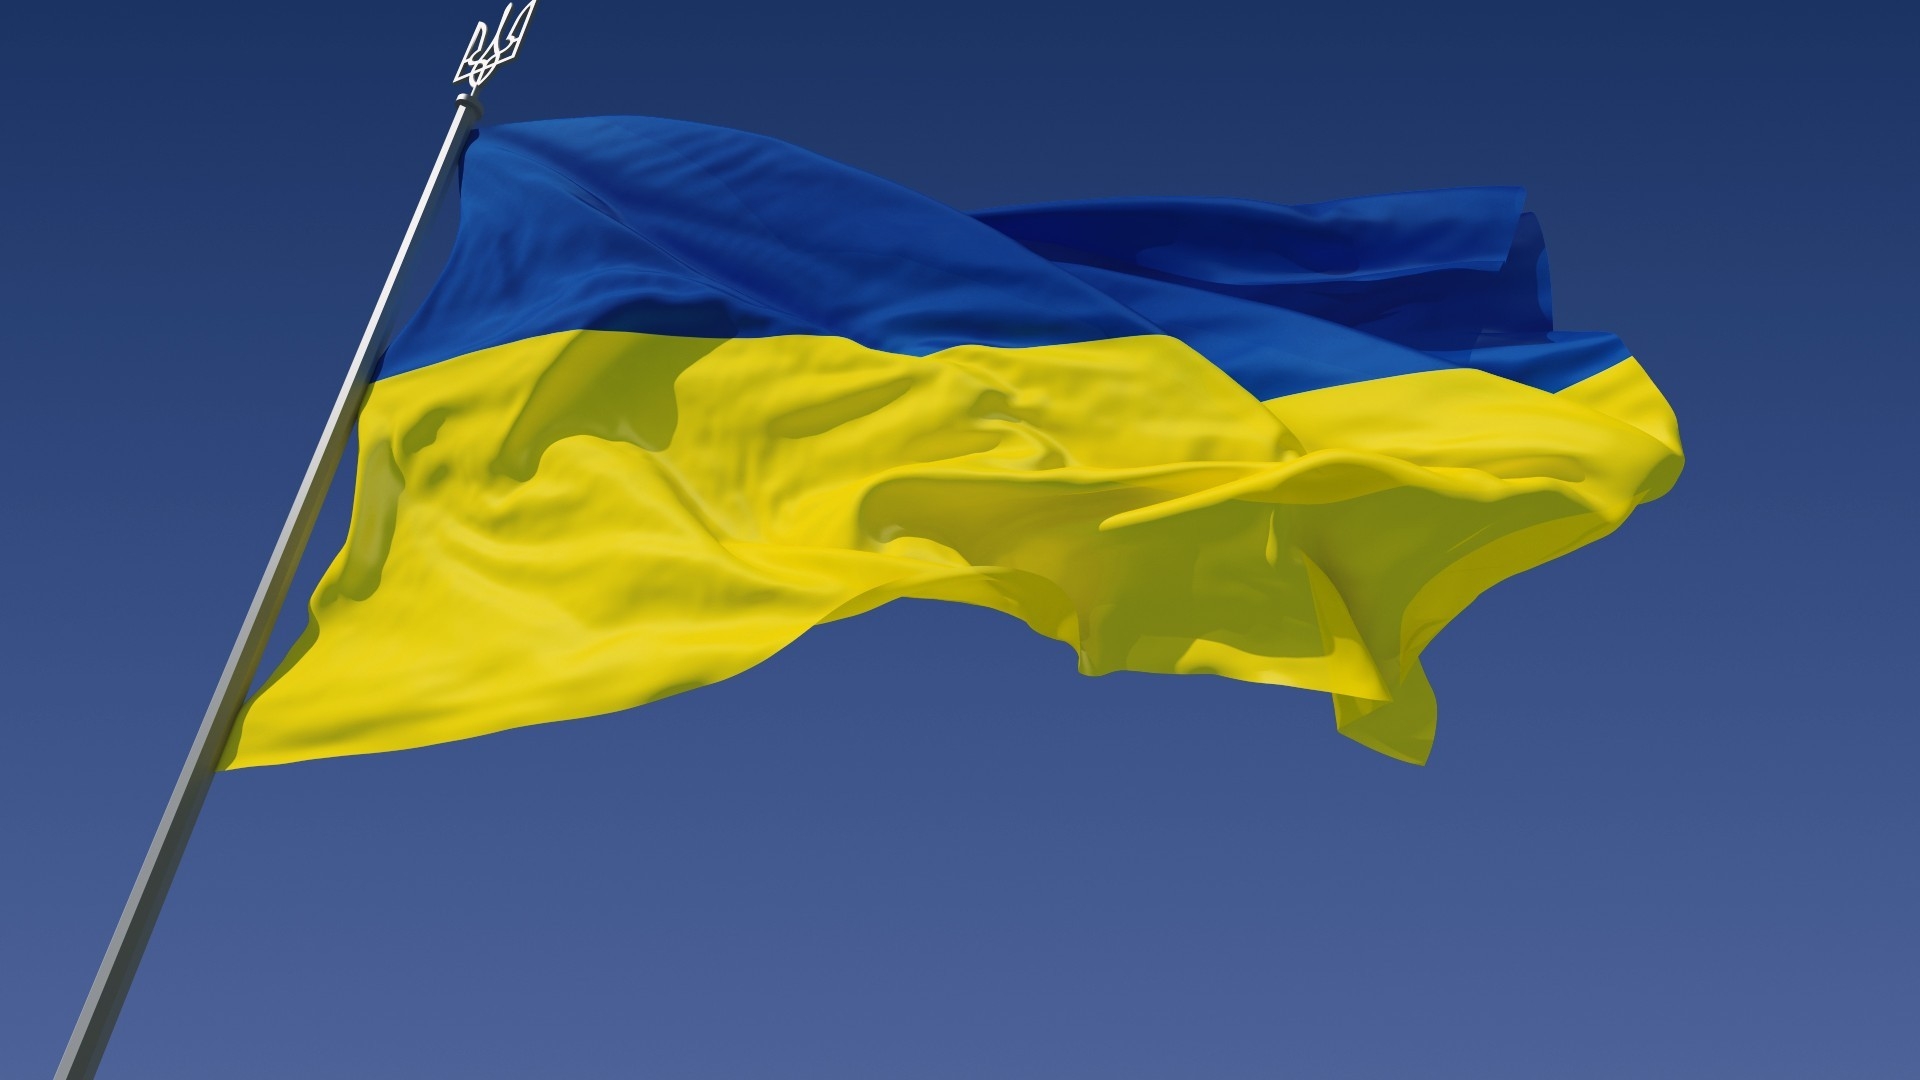 The Ukraine Flag for 1920 x 1080 HDTV 1080p resolution